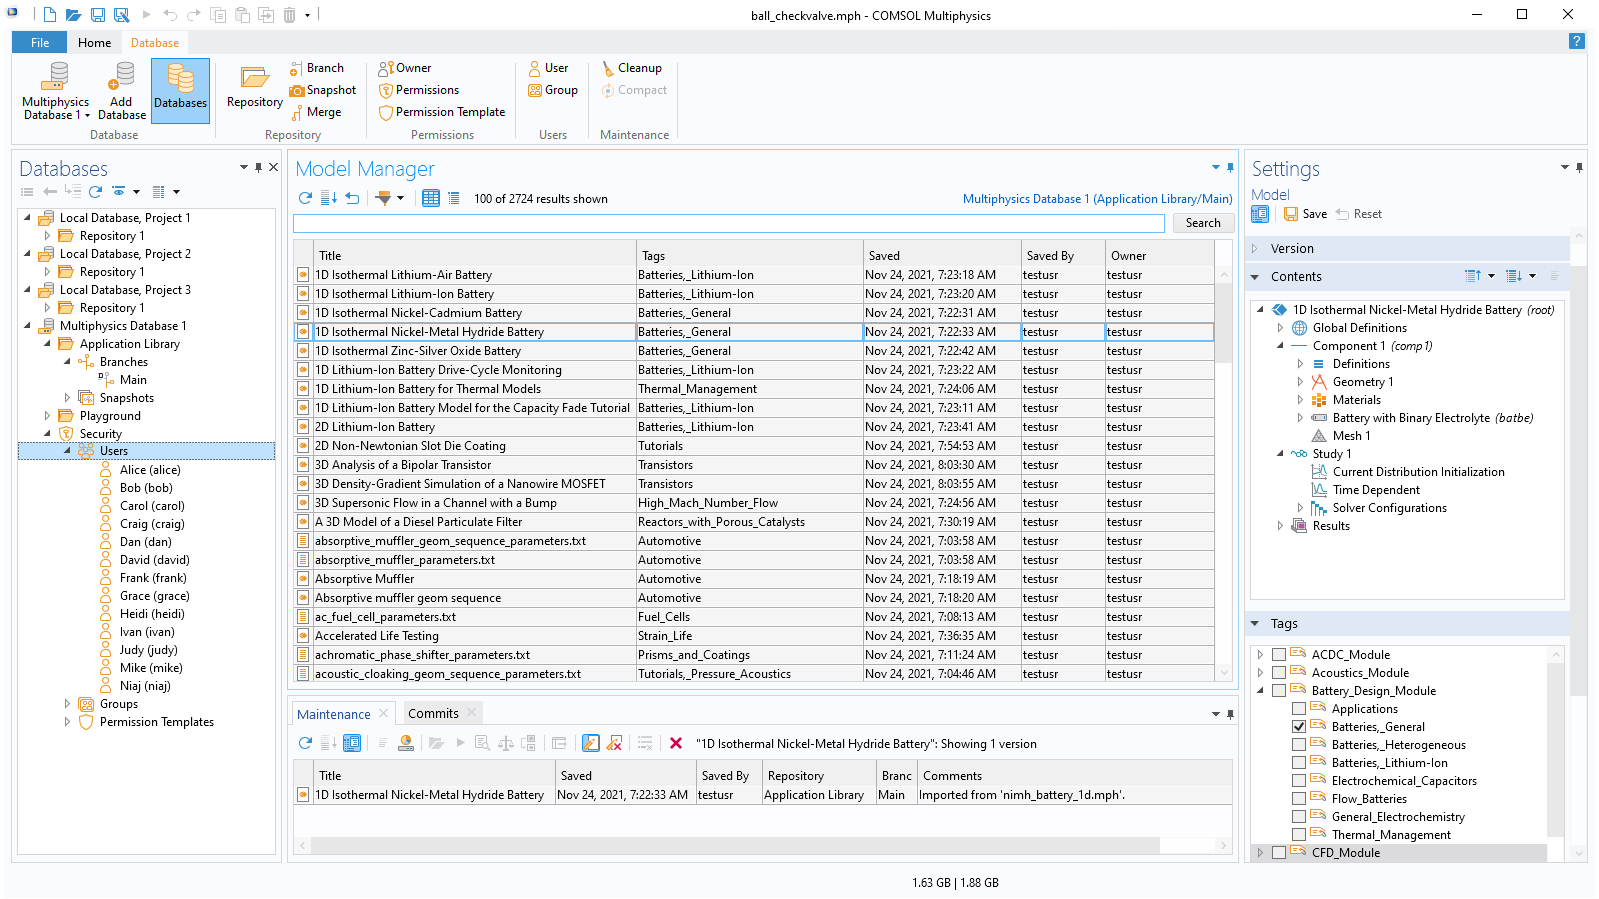 Interfaccia utente di COMSOL Multiphysics che mostra un elenco di utenti per un database Model Manager.